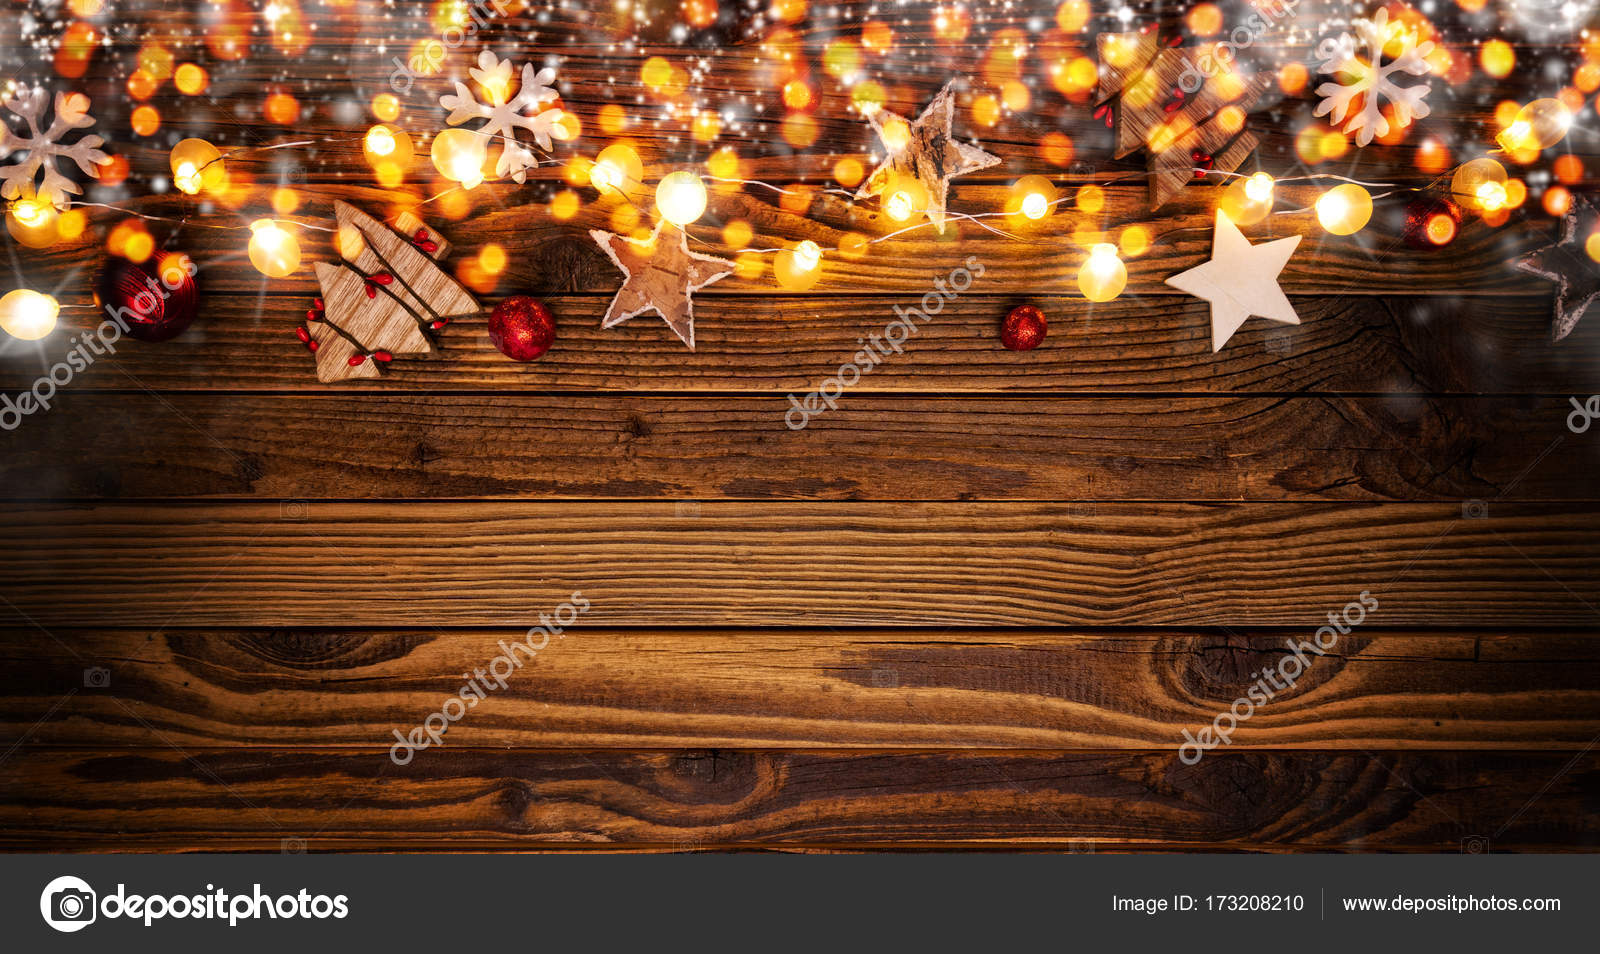 Không gì tuyệt vời hơn khi sử dụng trang trí gỗ Những món đồ nhỏ nhắn nhưng đầy ý nghĩa lại đem đến cho gia đình bạn không khí Giáng sinh ấm cúng hơn bao giờ hết. Bạn hãy xem qua các mẫu trang trí gỗ Giáng sinh để biến căn nhà của mình trở nên lung linh, đầy lễ hội.